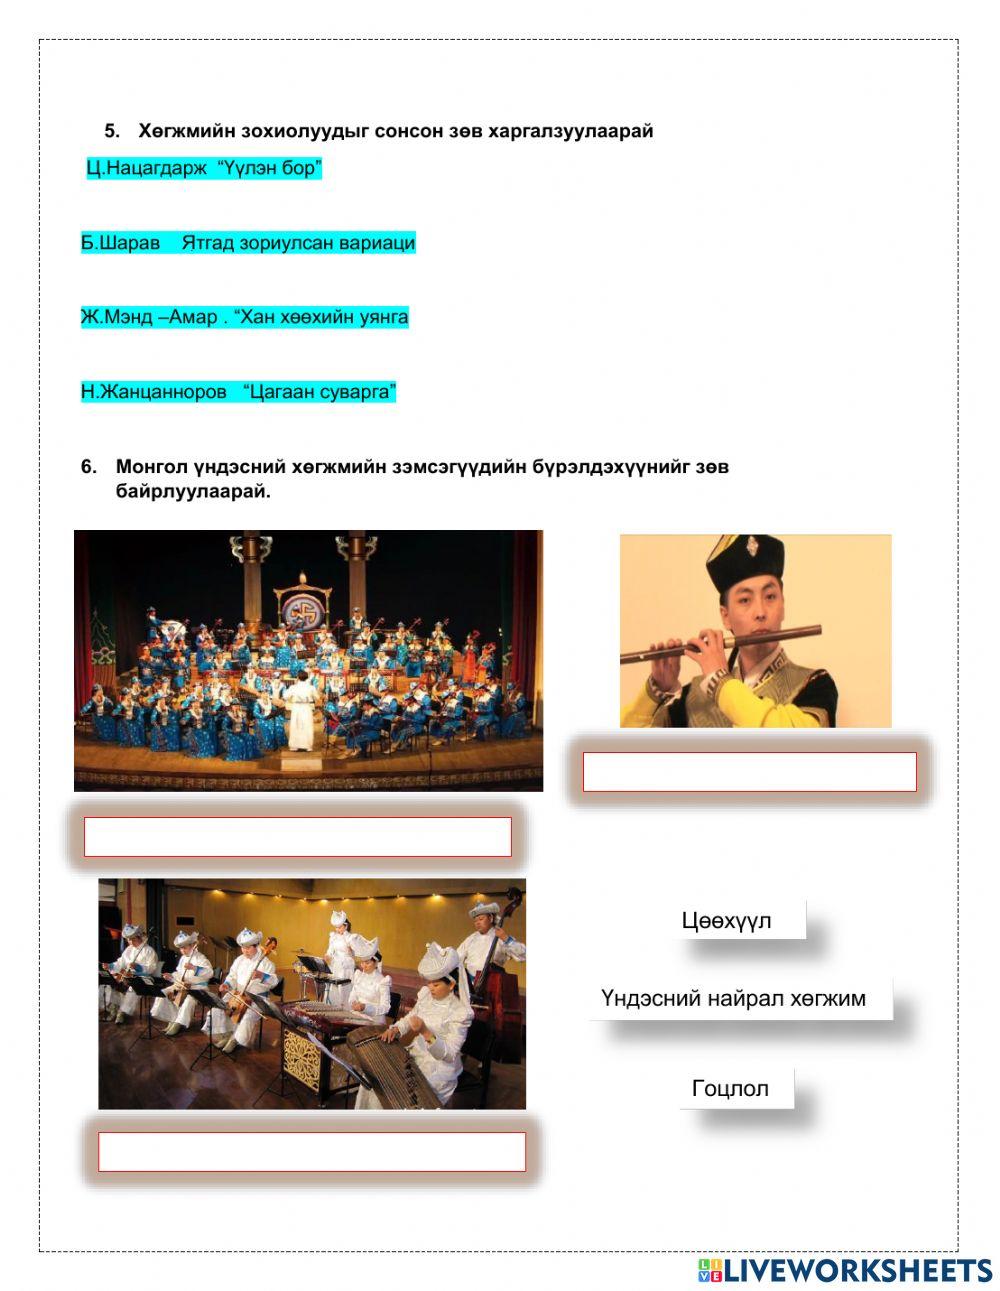 Монгол ардын хөгжимдөх урлаг